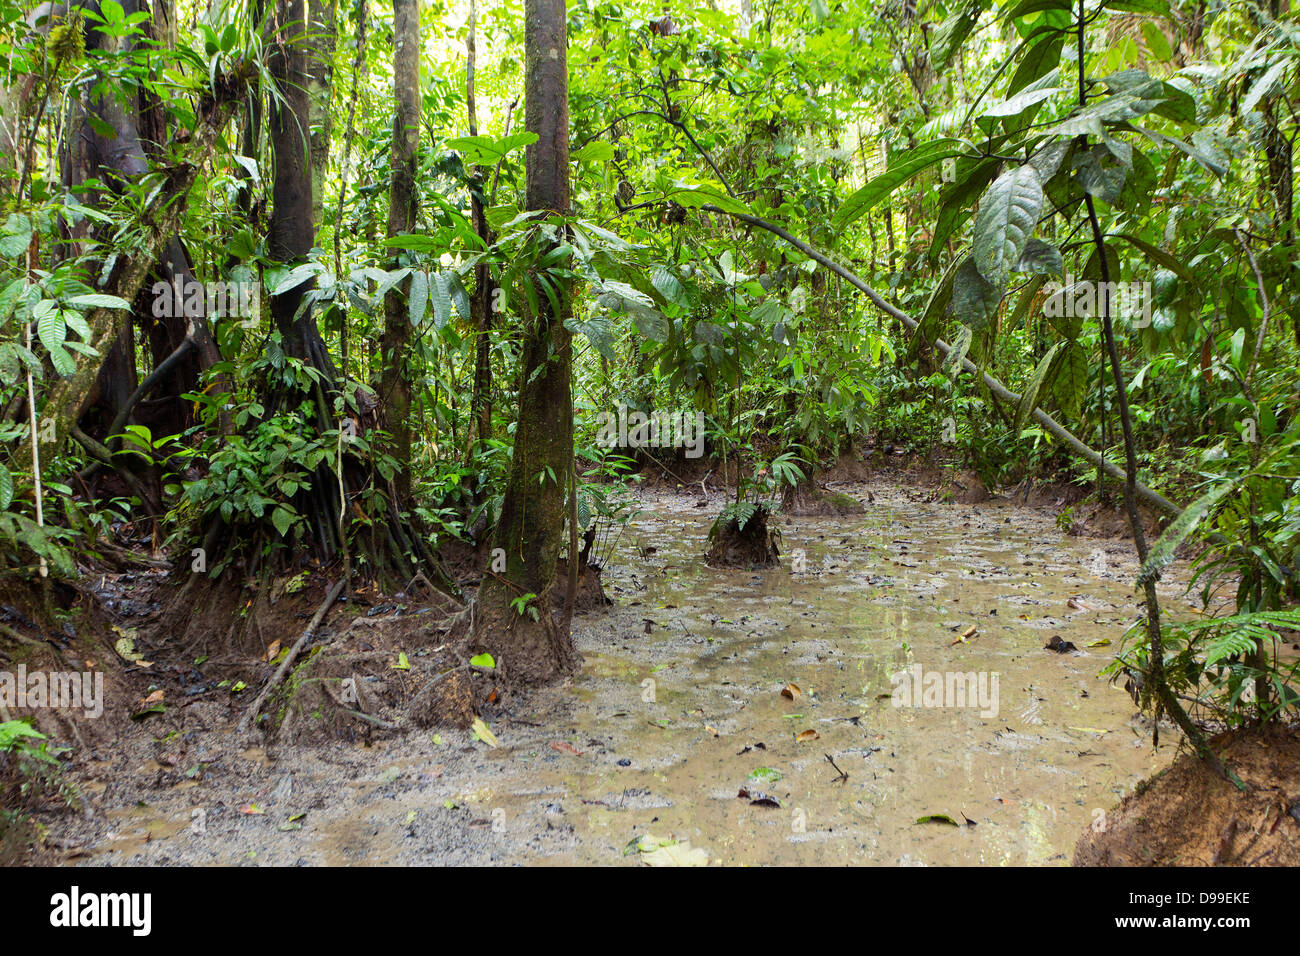 Ein "Salt Lick' auf den Regenwald Stock in Ecuador. Große Säugetiere kommen zu diesen Seiten zu mineralischen reiche Erde essen. Stockfoto